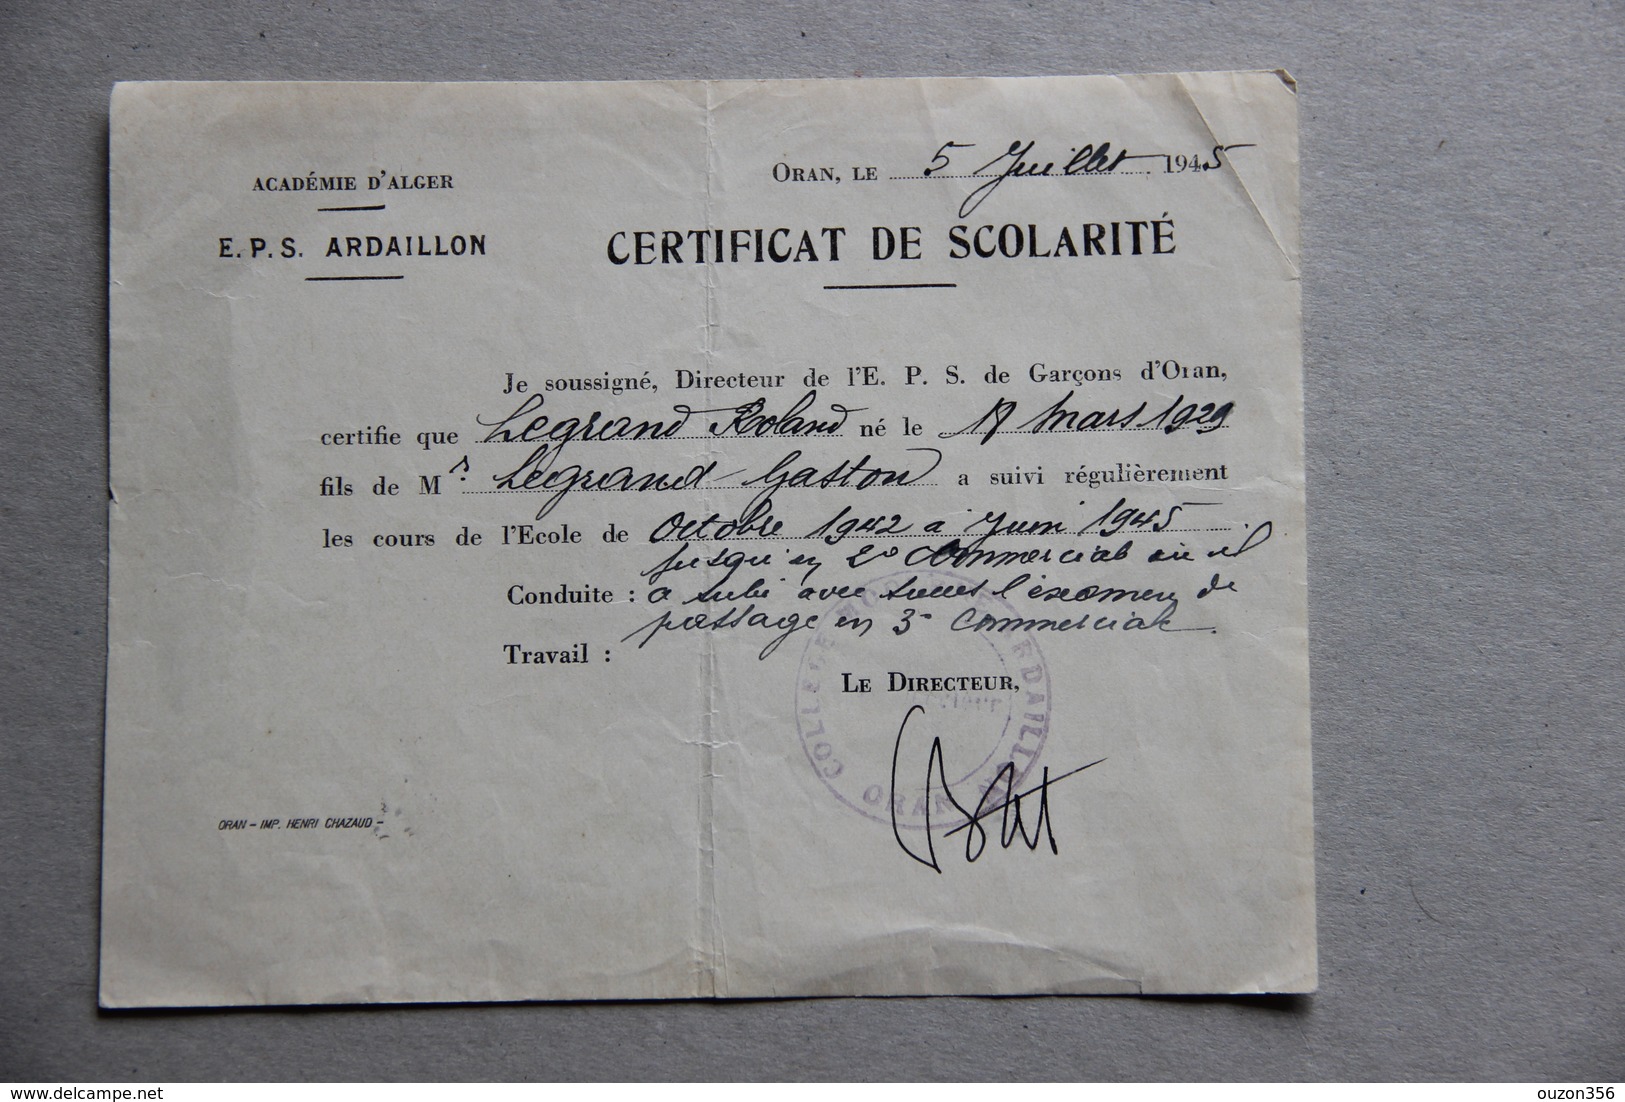 Certificat De Scolarité, E.P.S. Ardaillon à Oran, Académie D'Alger (Algérie), 1945 - Diplômes & Bulletins Scolaires